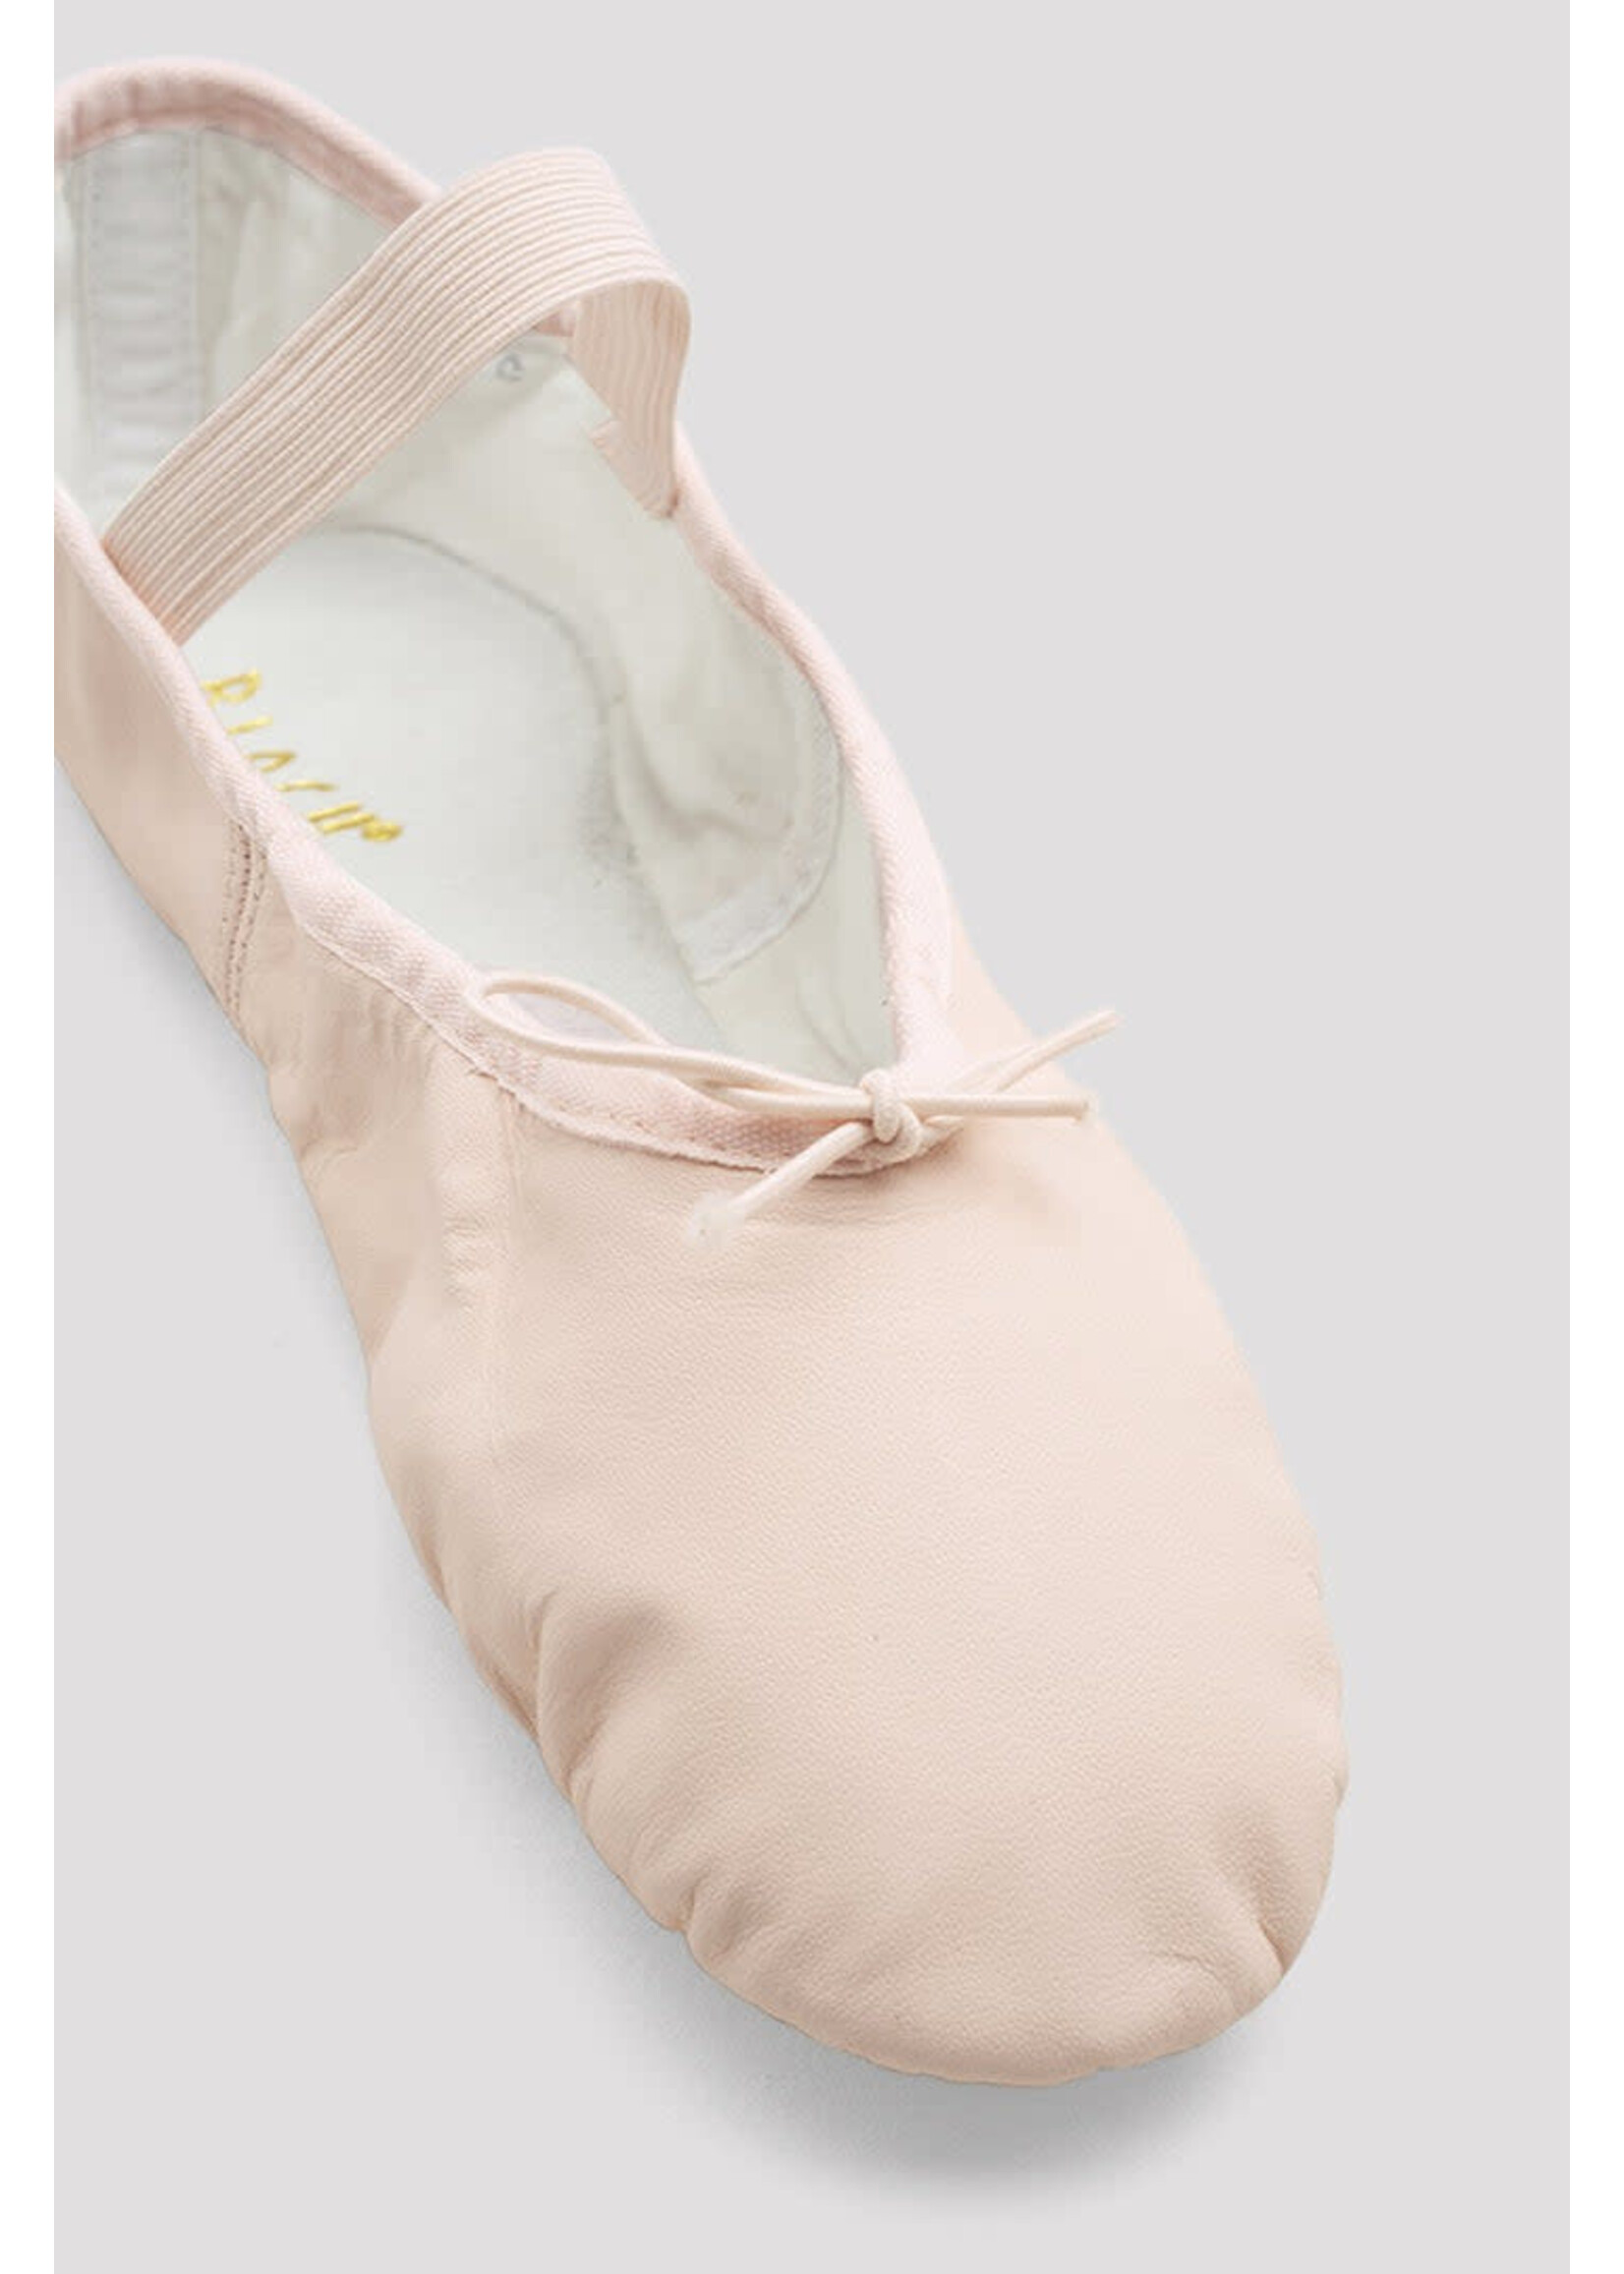 Bloch Bloch Dansoft Full Footed Ballet Shoe